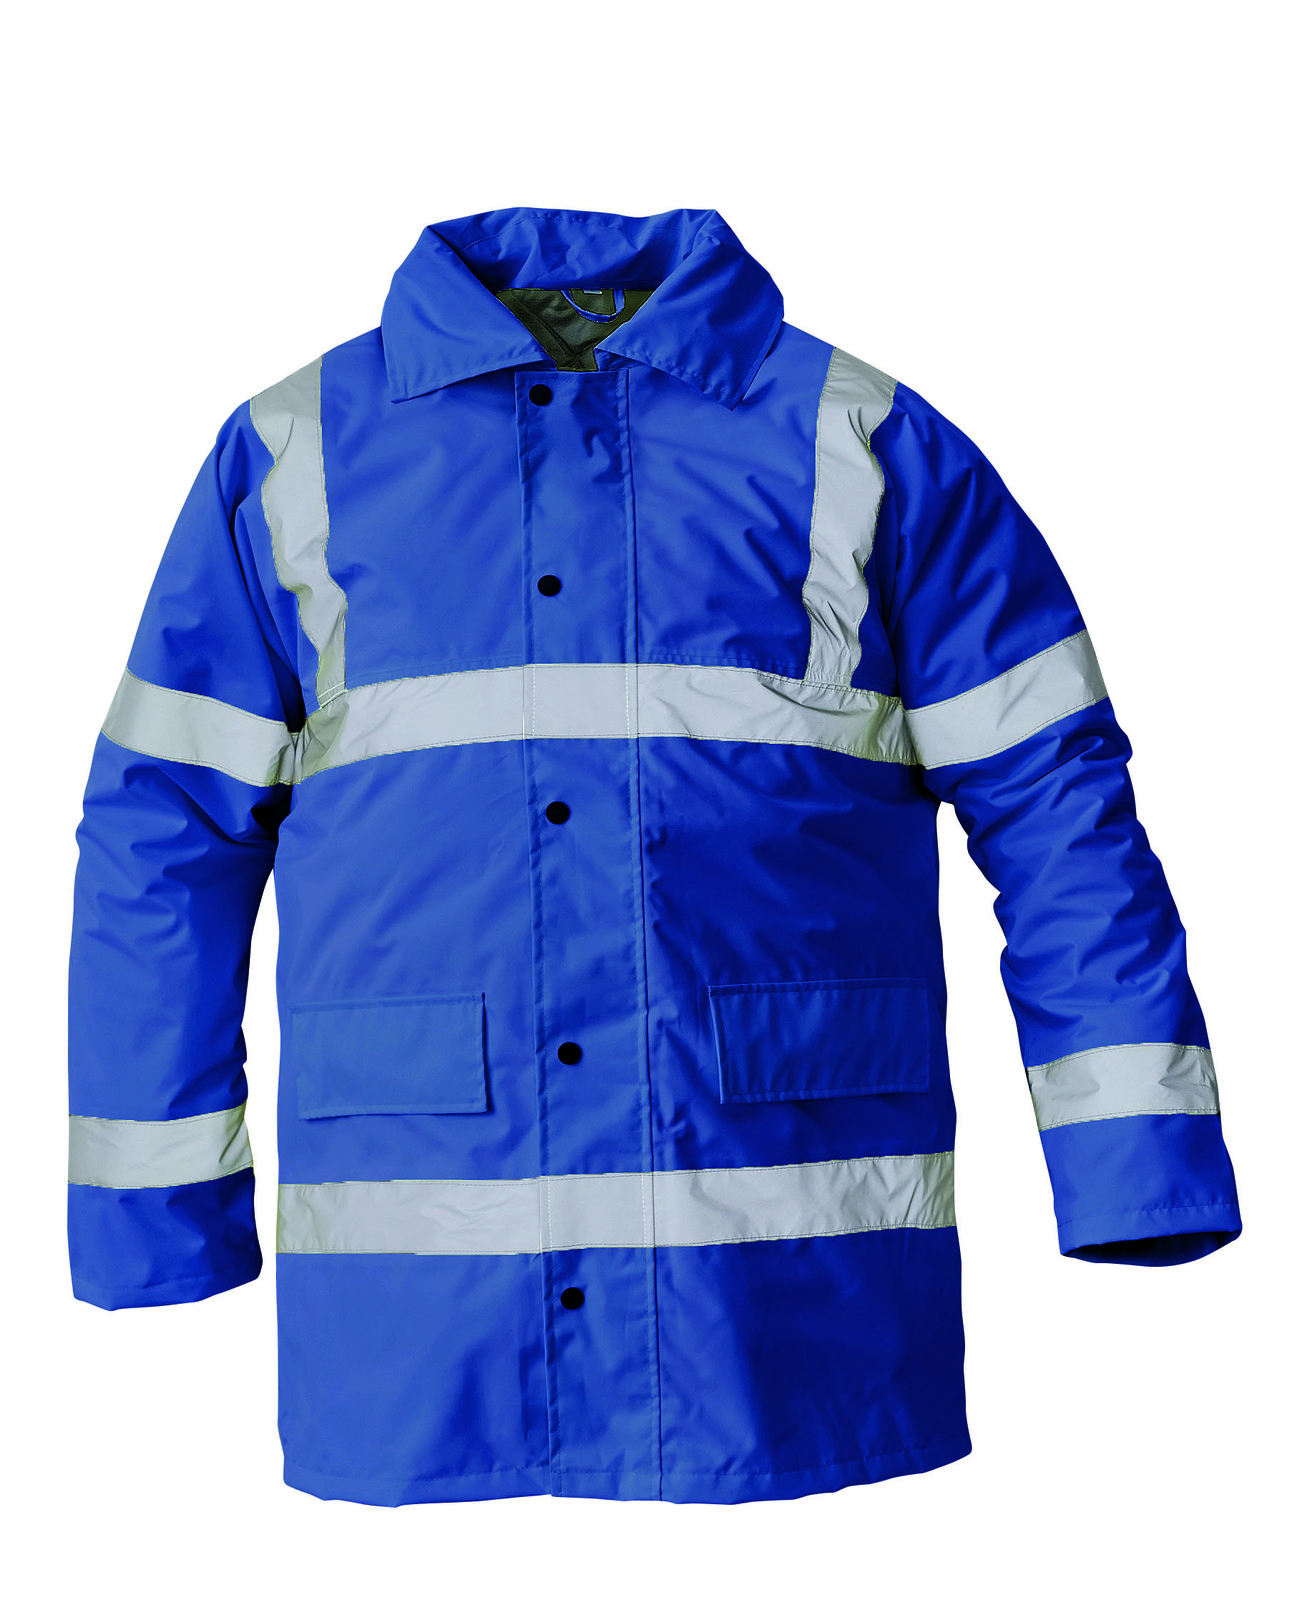 Ľahká zateplená reflexná bunda Sefton - veľkosť: 3XL, farba: royal blue